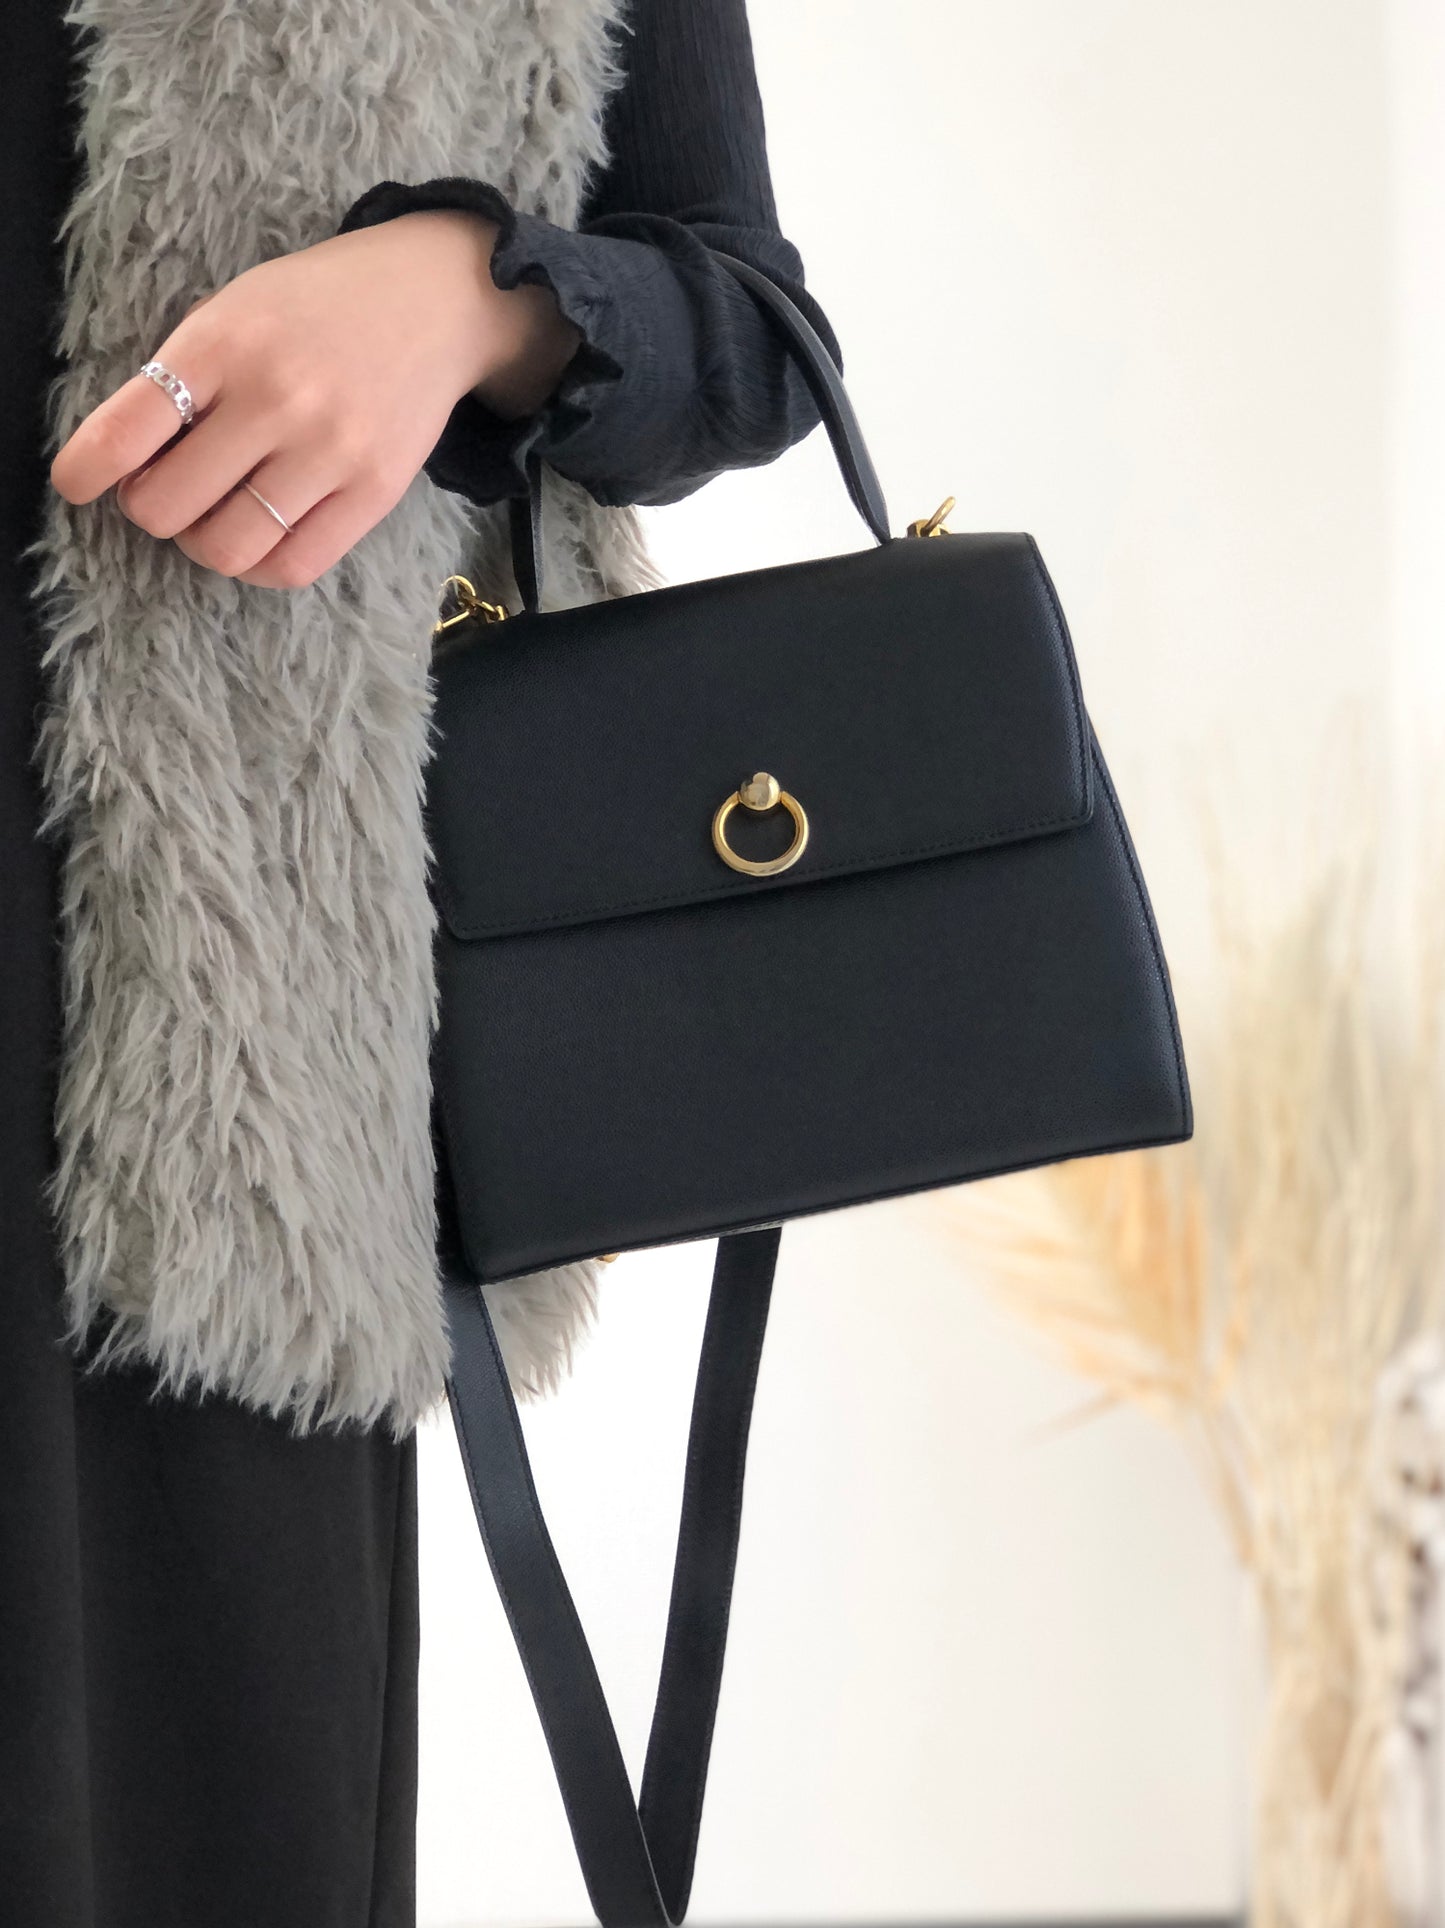 CELINE Gancini  Leather Two-way Handbag Shoulder bag Black Vintage hkng4u